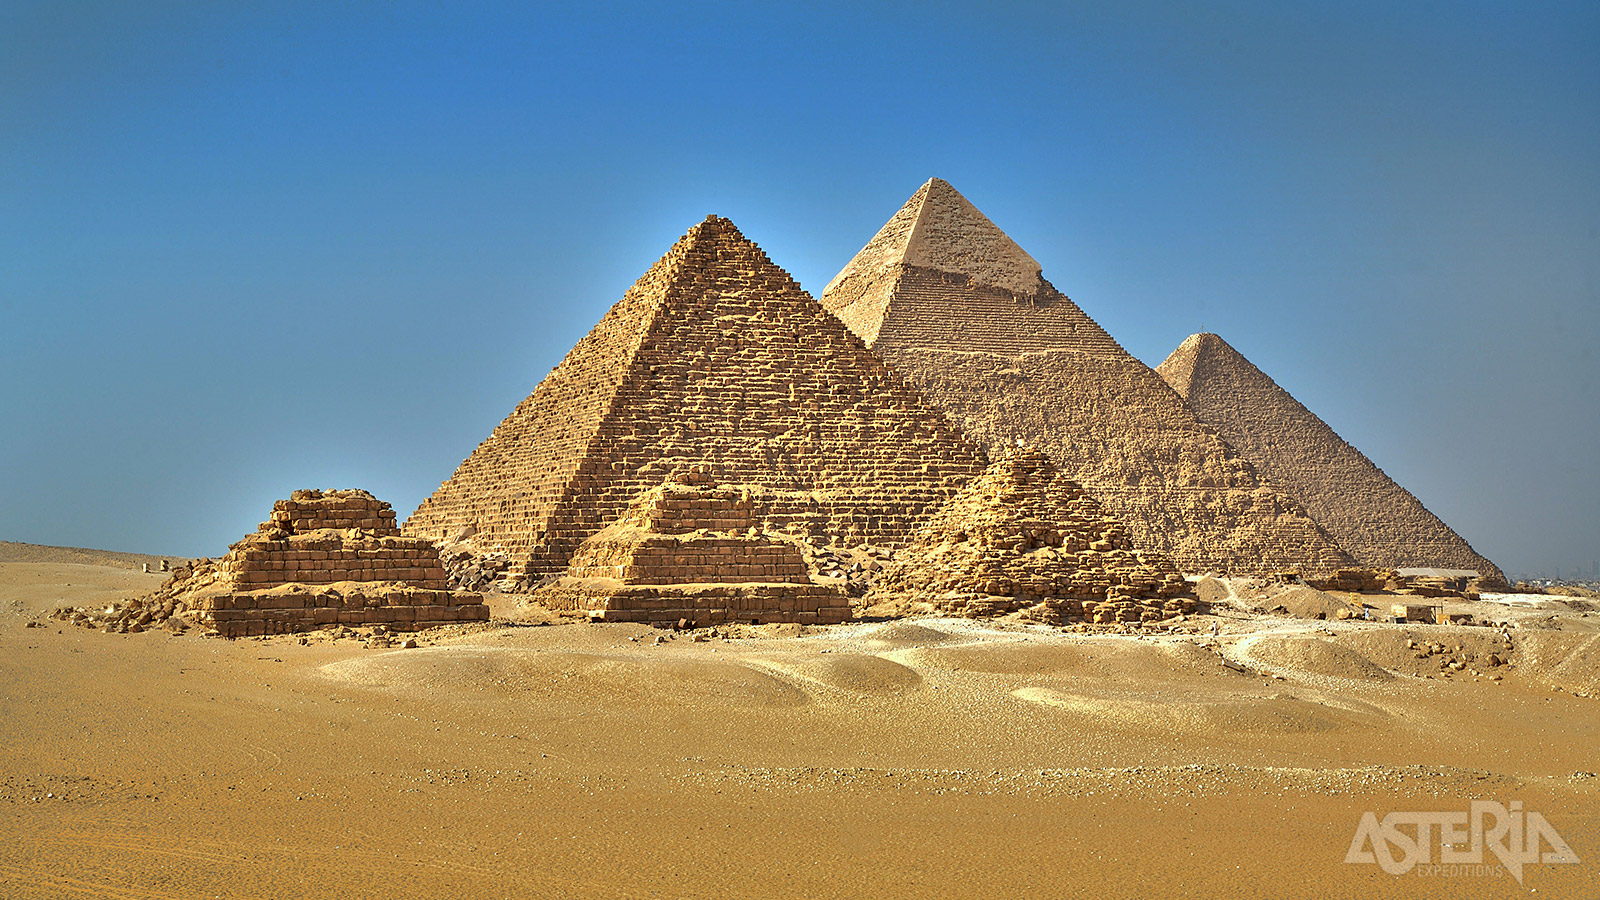 De piramides van Cheops, Chefren en Mykerinos zijn de bekendste overblijfselen van het Oude Egypte